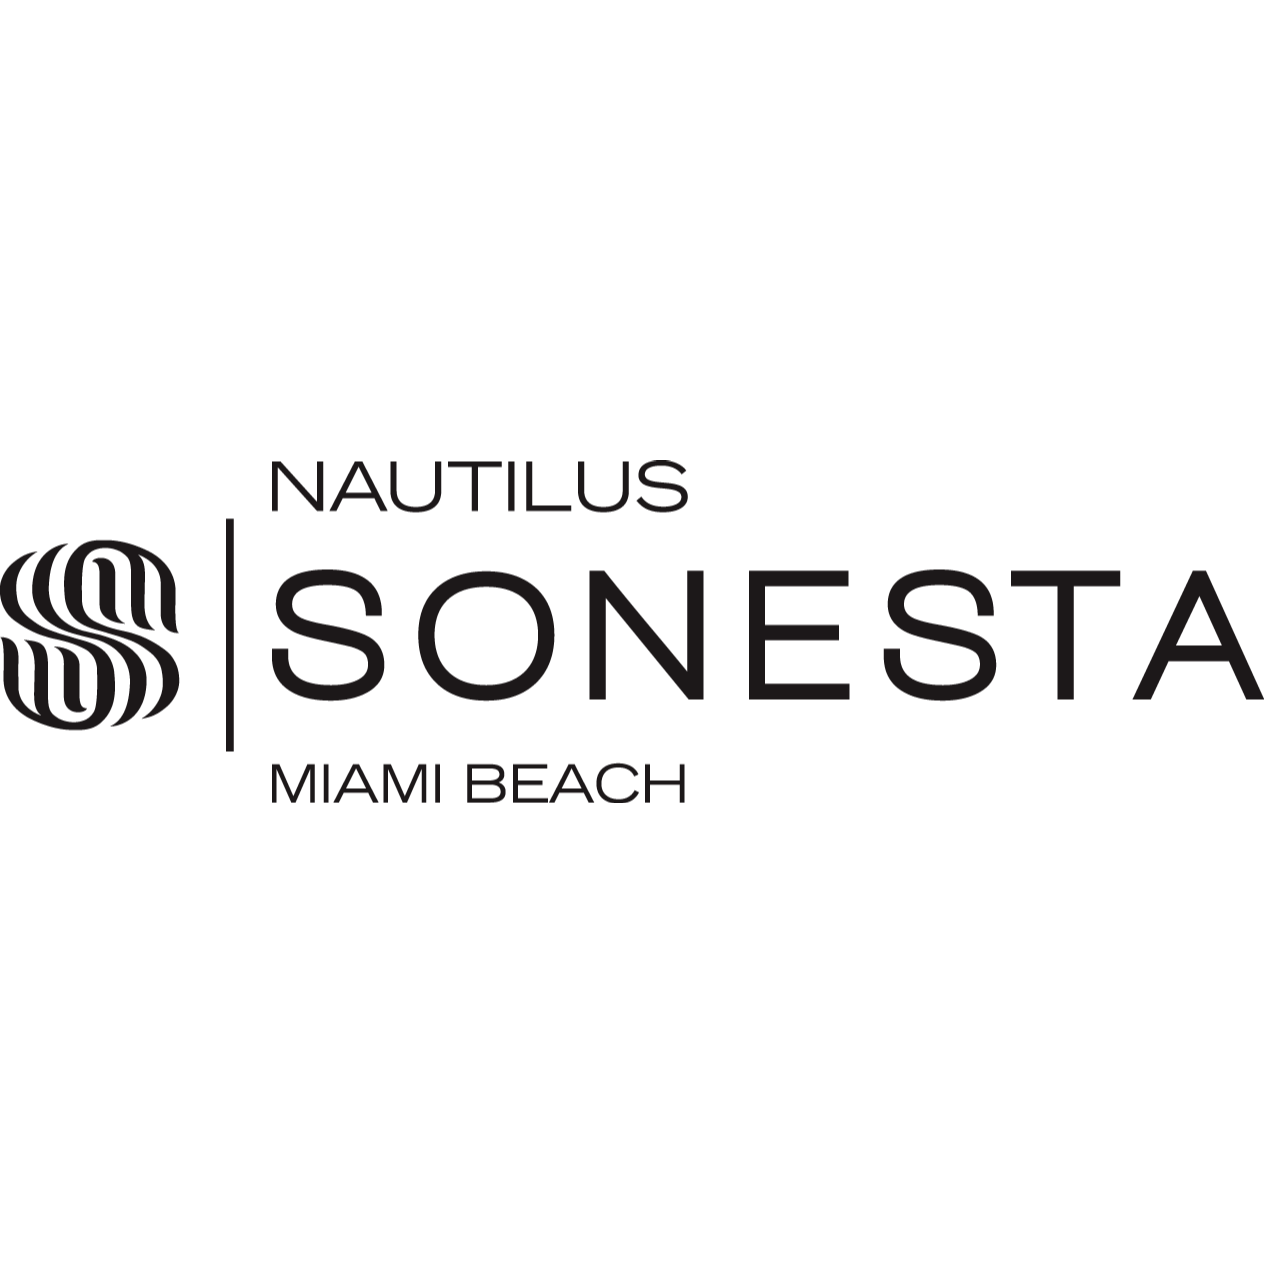 Nautilus Sonesta Miami Beach - Closed